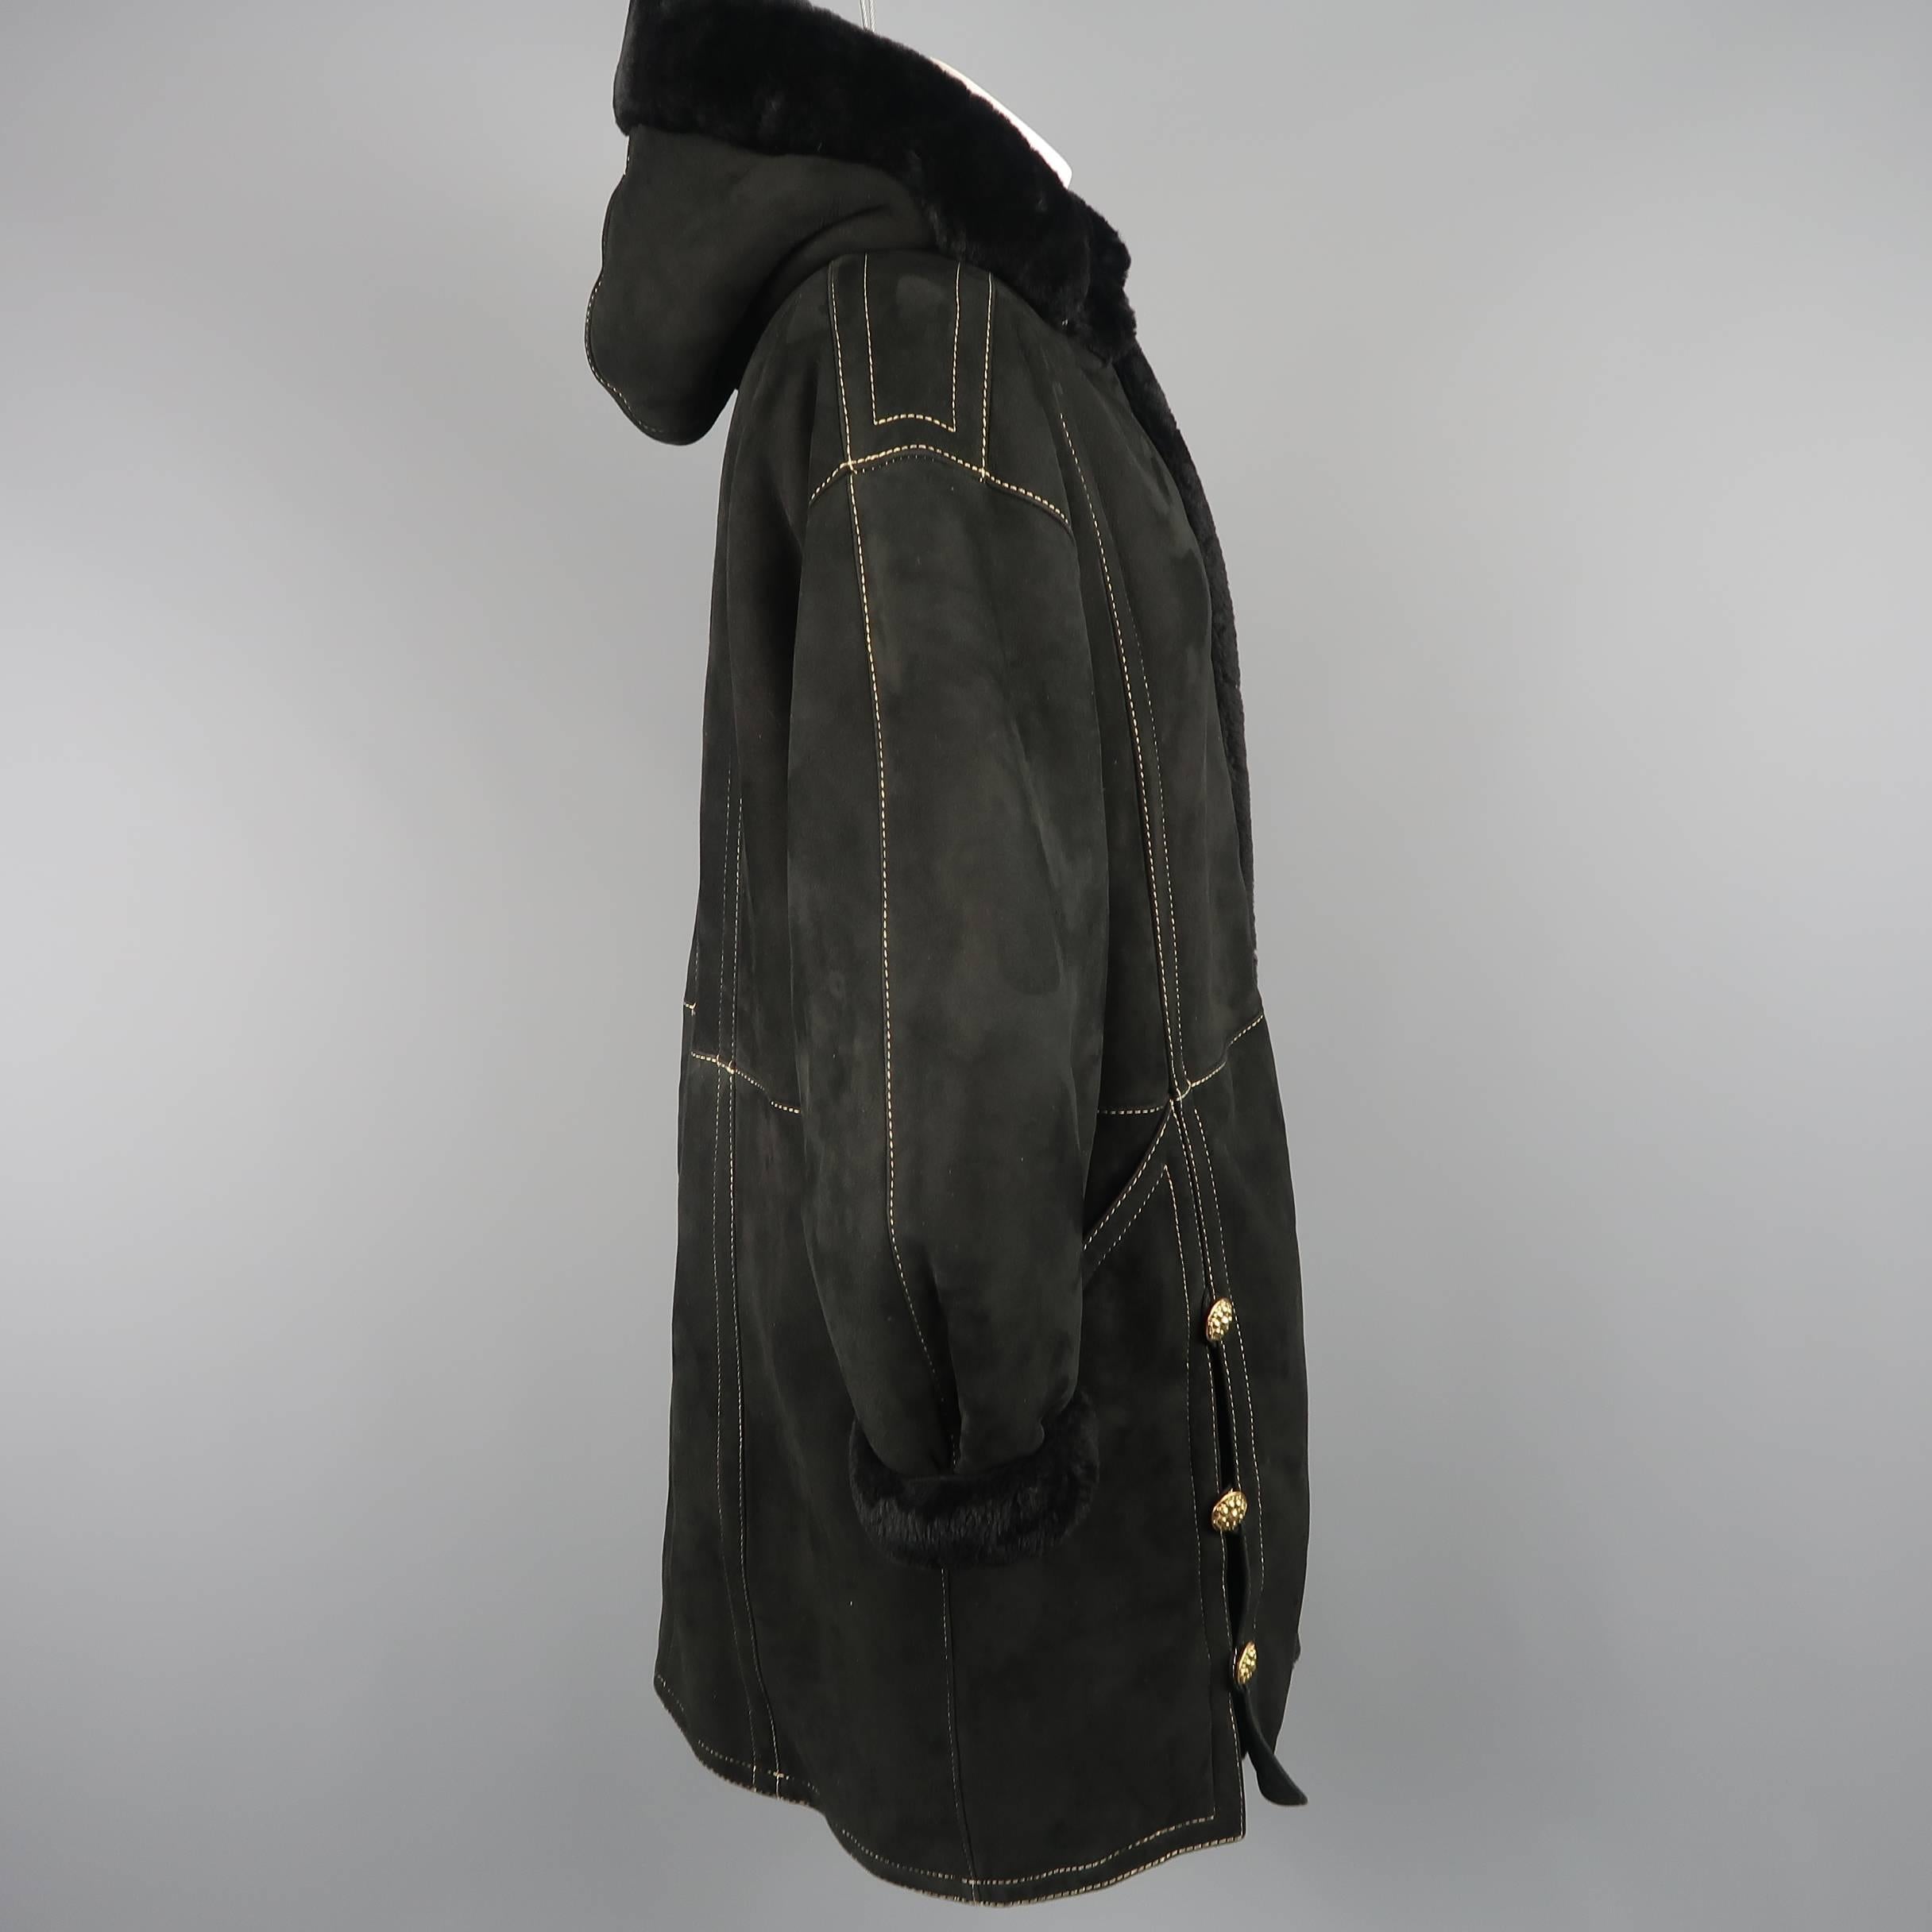 Yves Saint Laurent Coat - Vintage Black shearling Gold Hooded Jacket 6